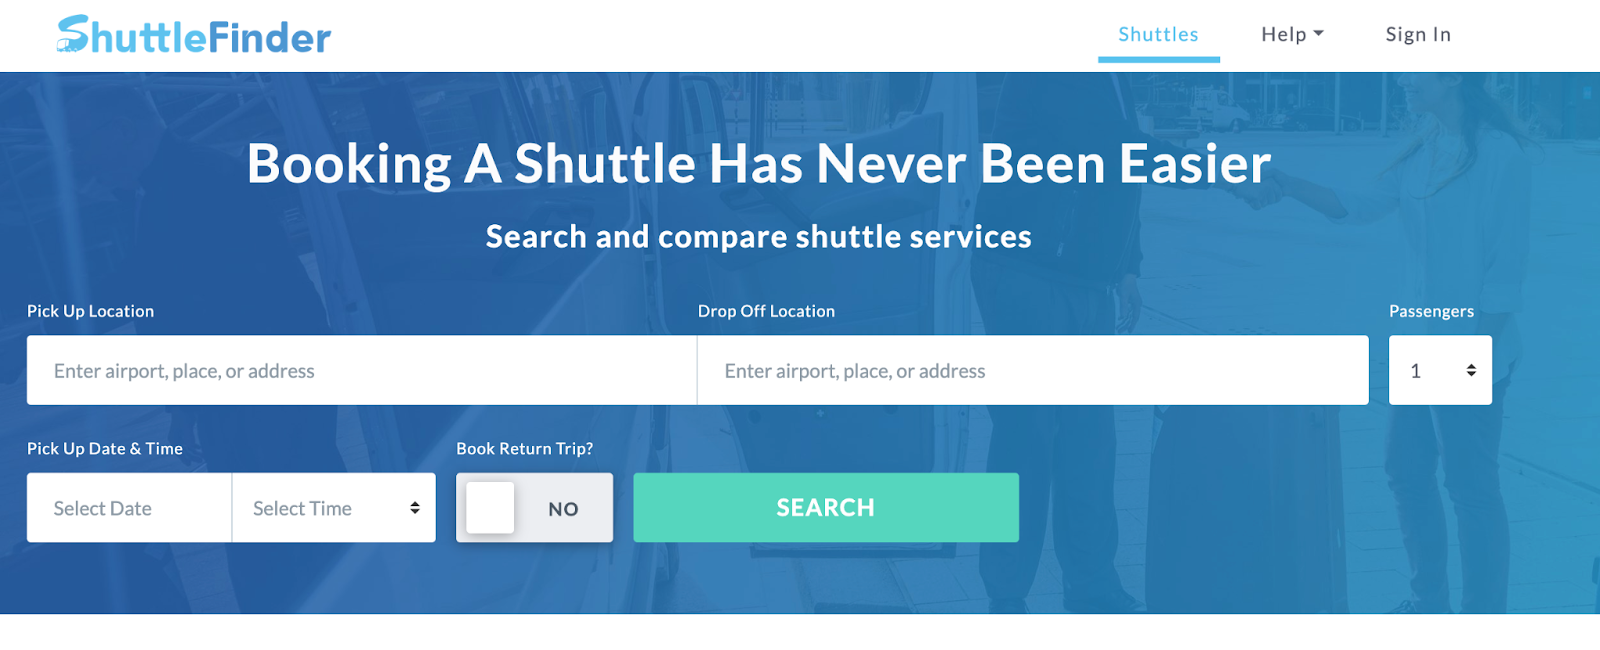 Shuttlefinder's booking homepage